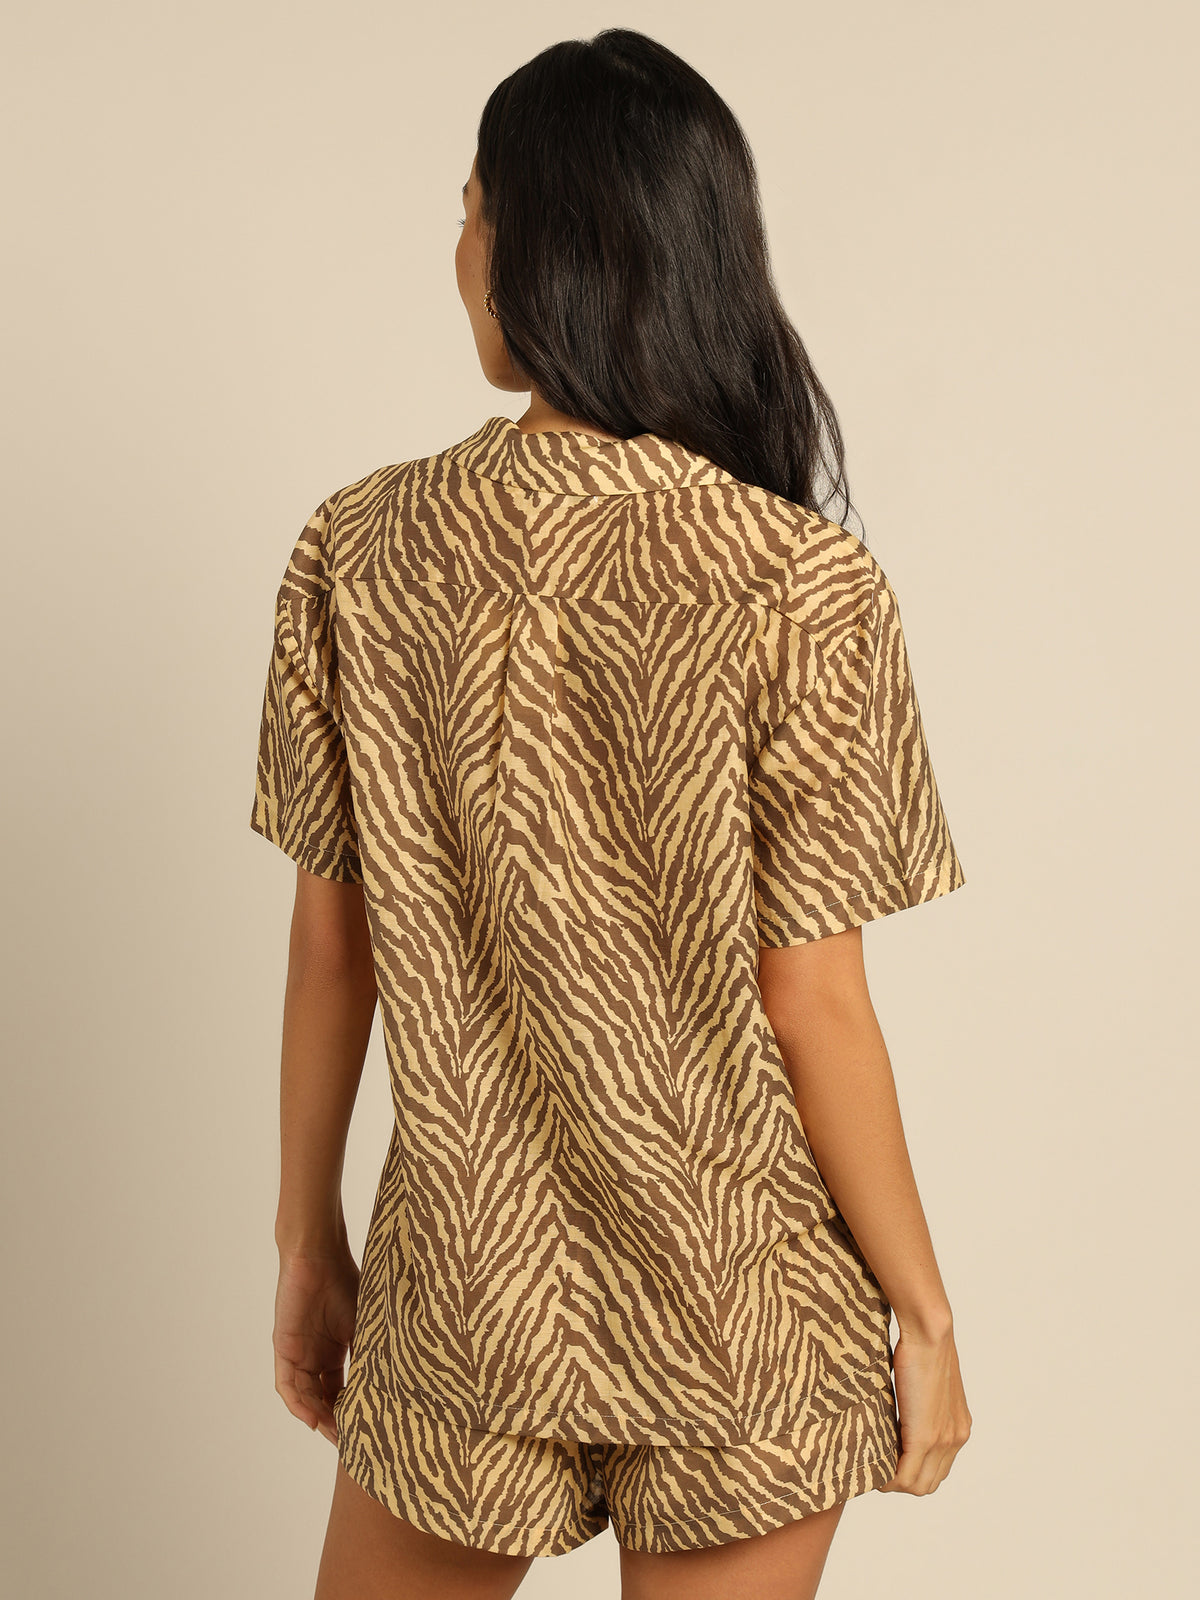 Indie Shirt in Brown &amp; Tan Zebra Print